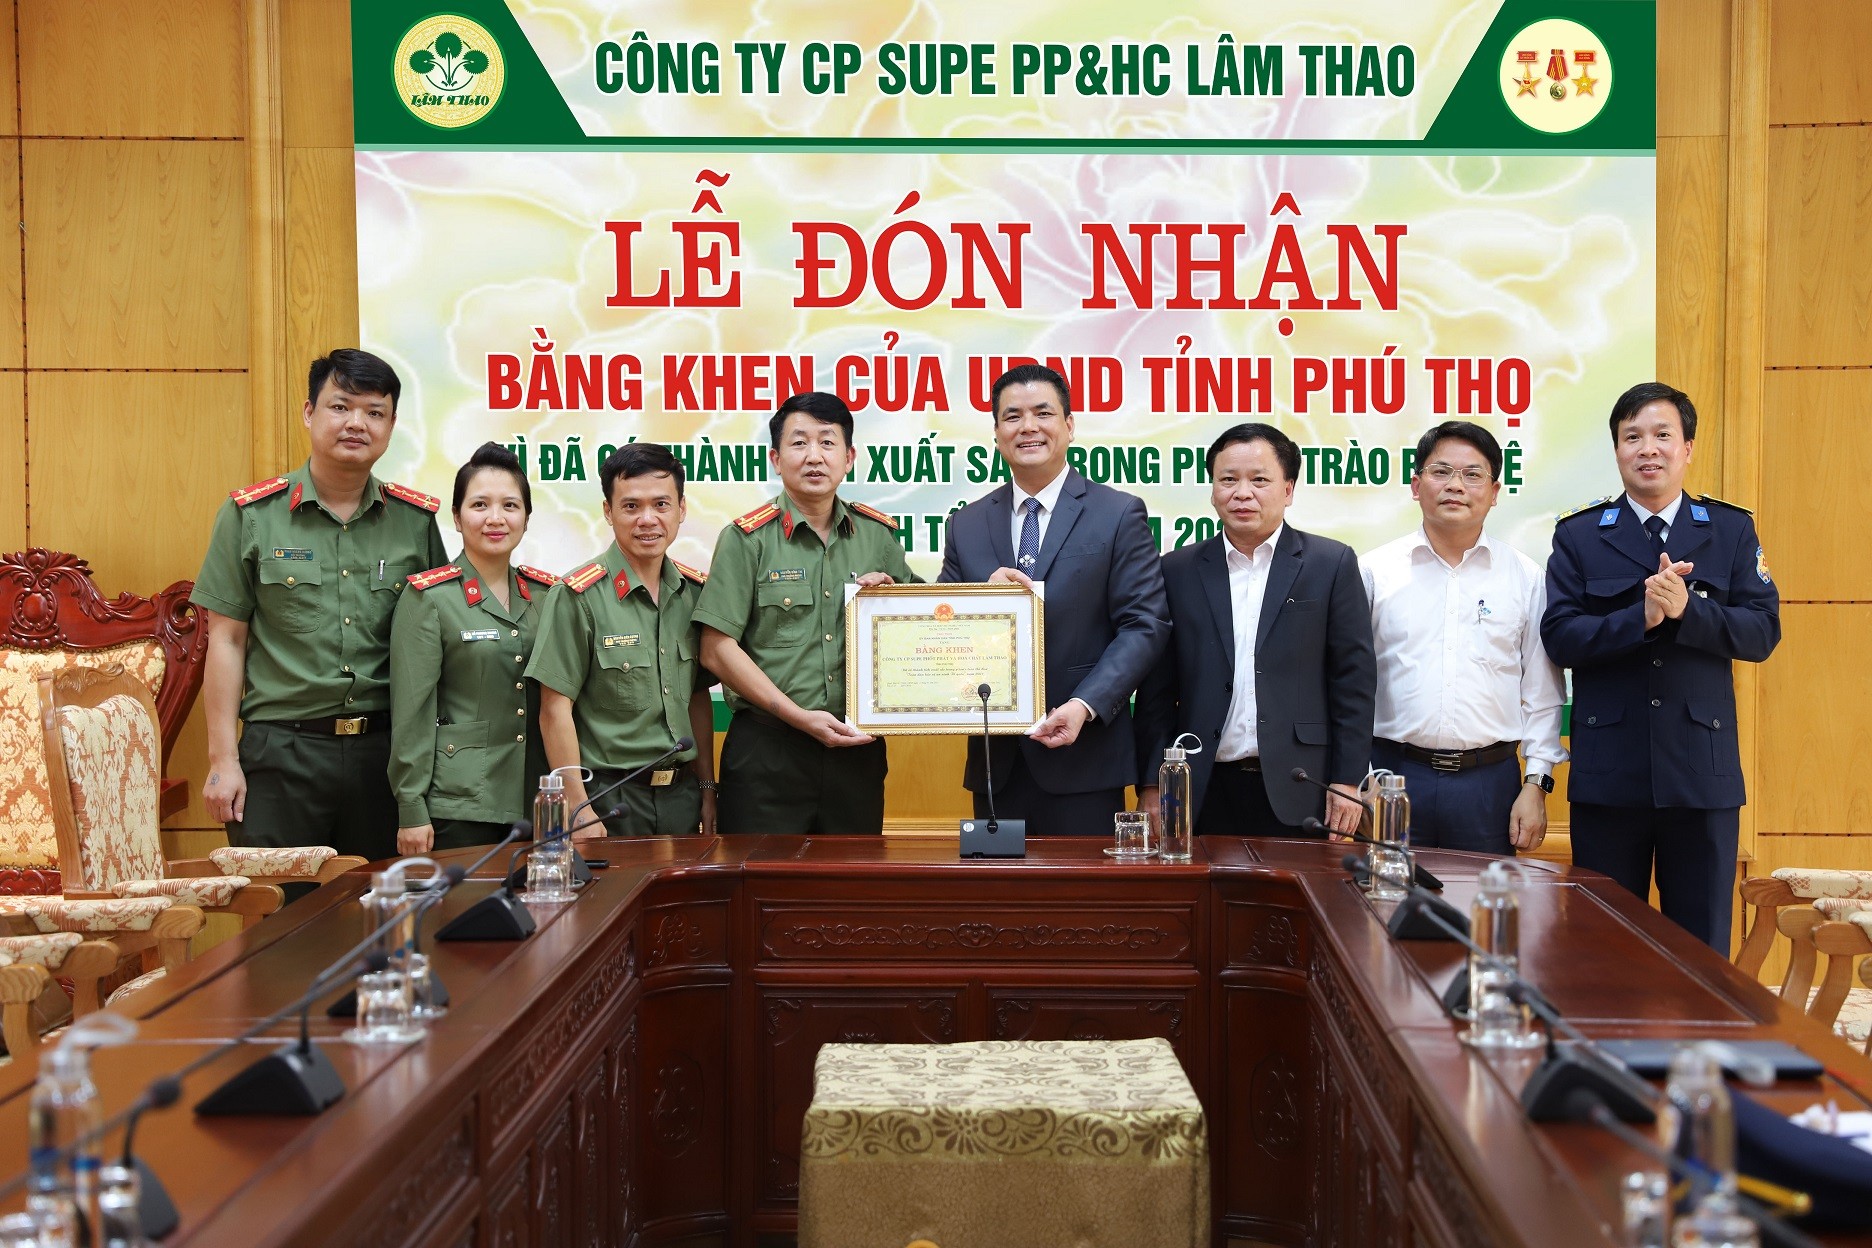 Công ty vinh dự nhận Bằng khen của UBND tỉnh Phú Thọ vì đã có thành tích xuất sắc trong phong trào “Toàn dân bảo vệ an ninh Tổ quốc” năm 2021.